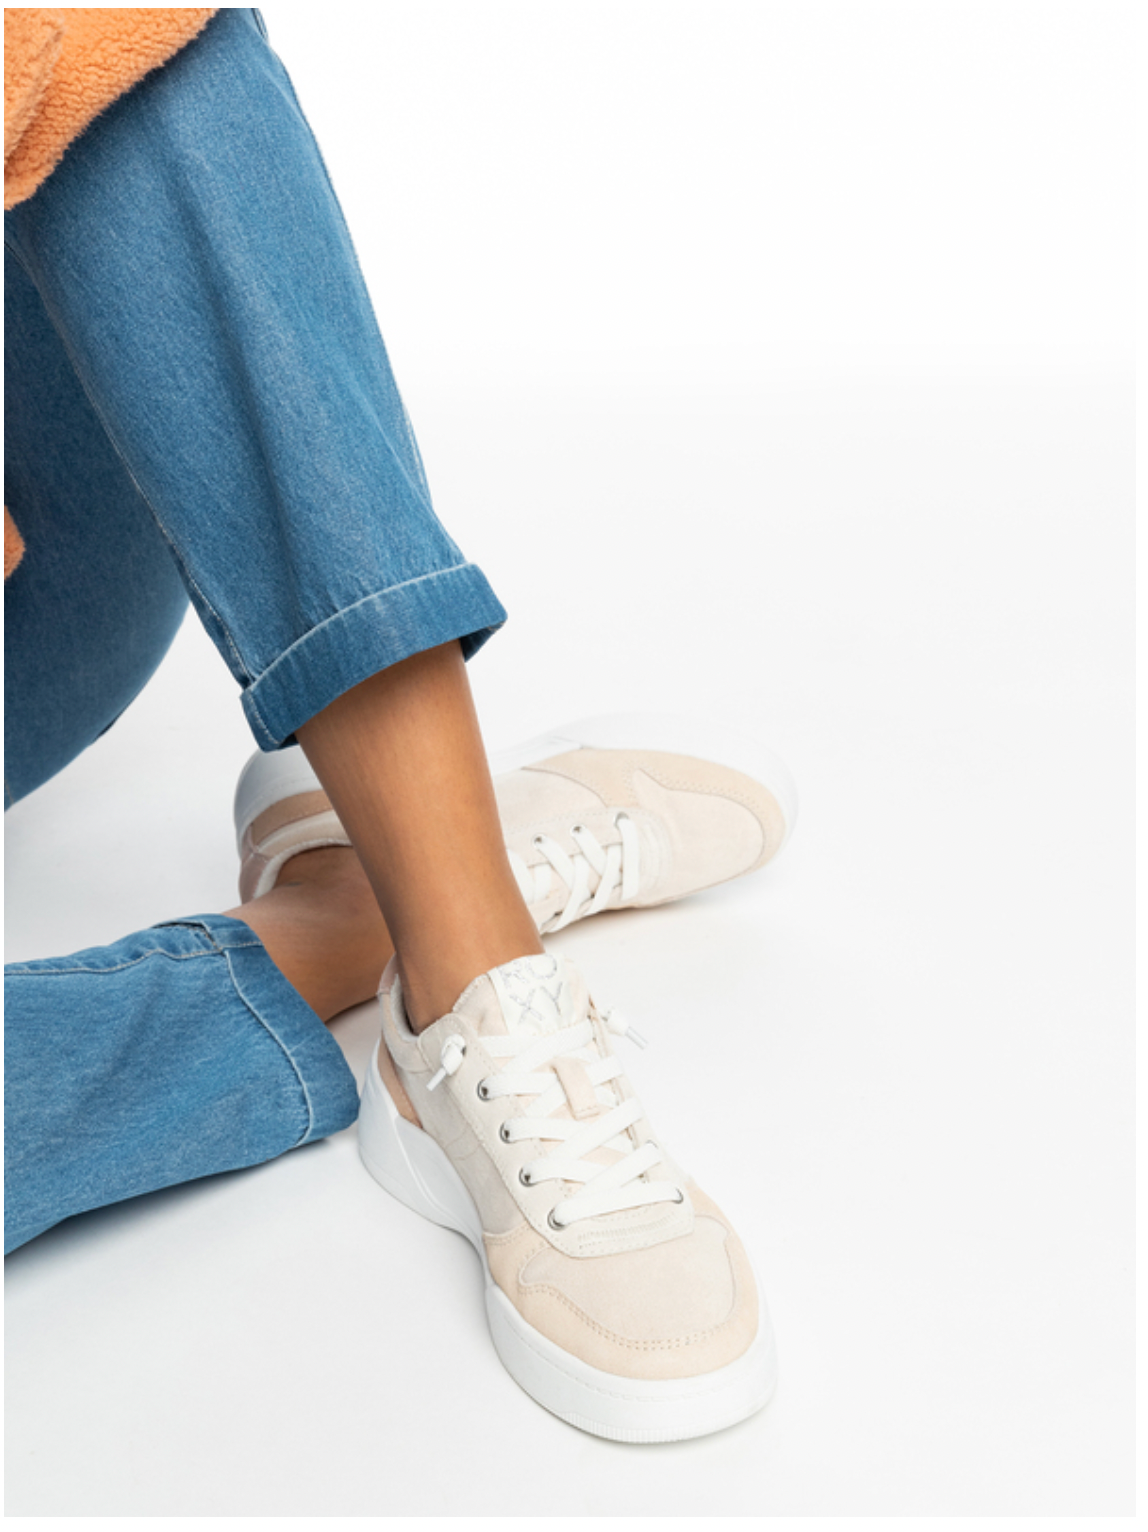 ROXY Harper - Slip-On Shoes for Women